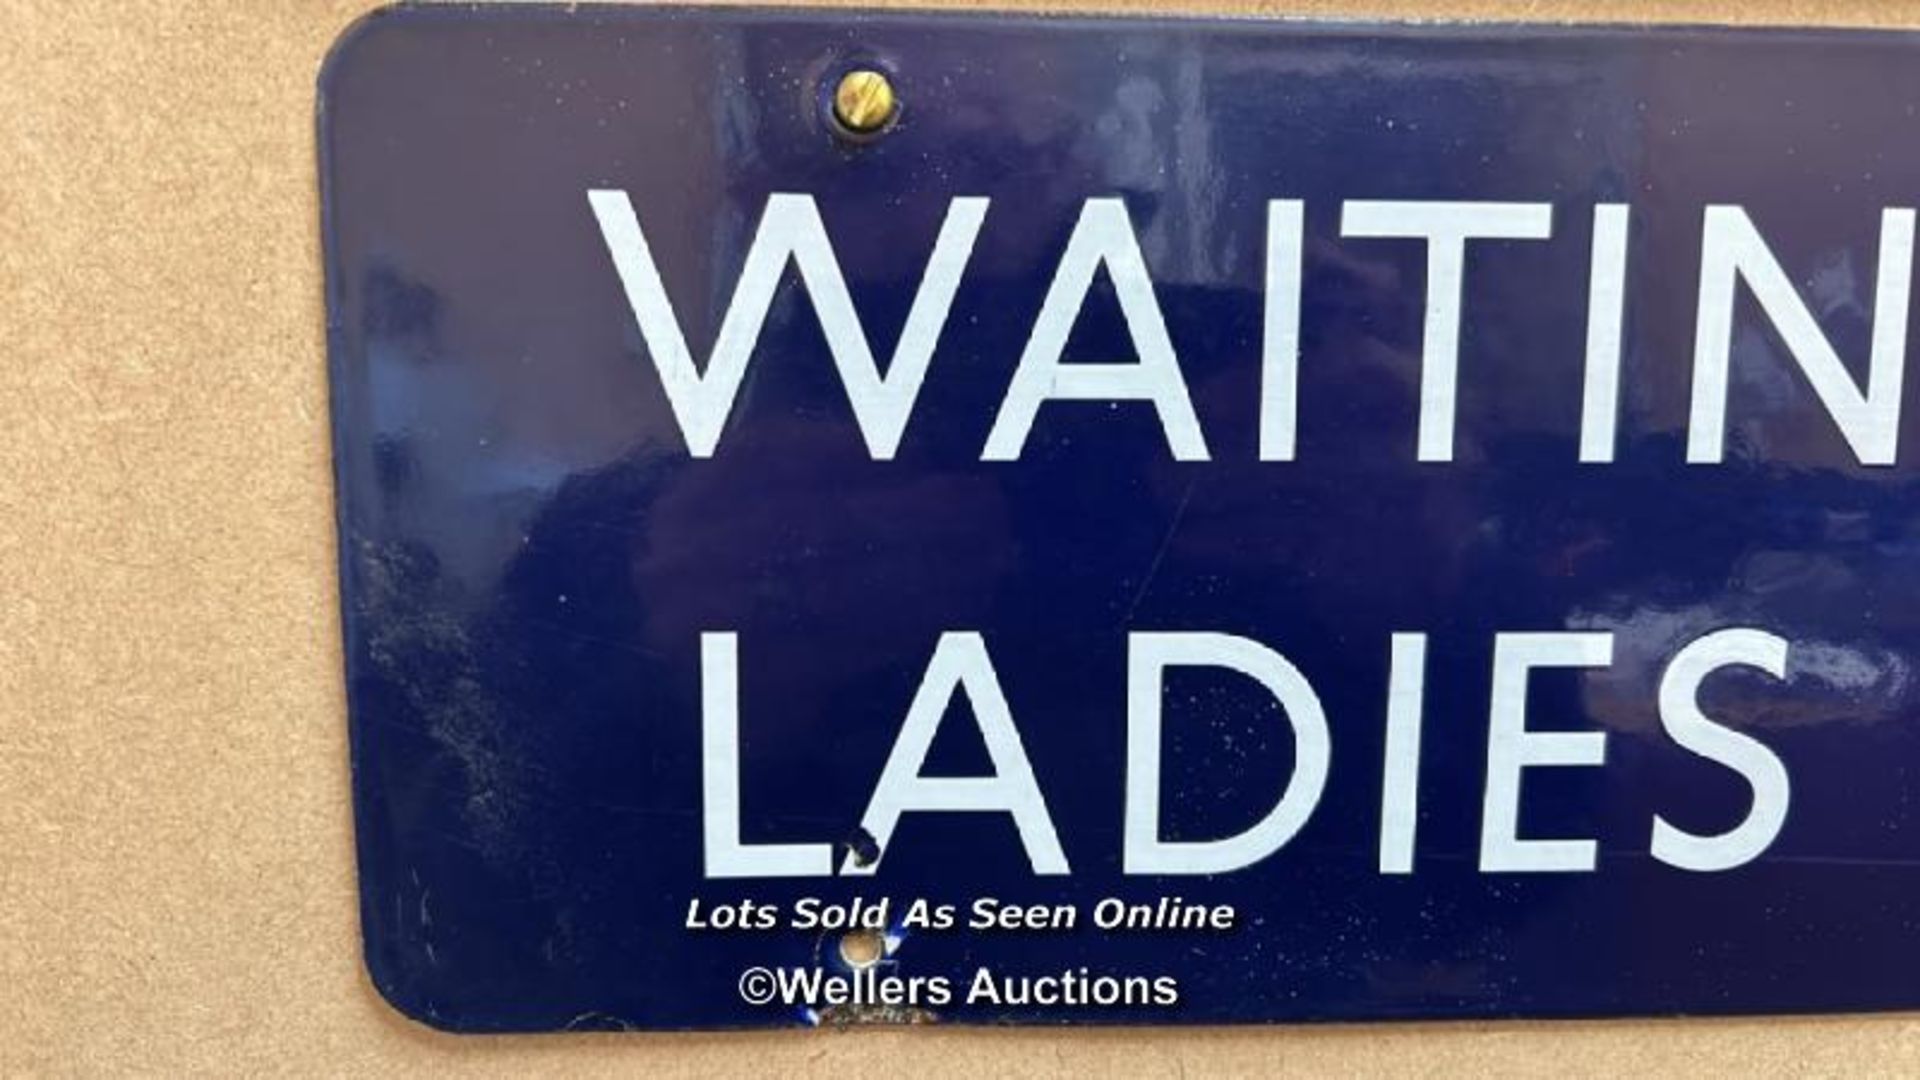 Vintage enamel railway sign "WAITING AND LADIES ROOM", 45.5x15cm - Image 2 of 3